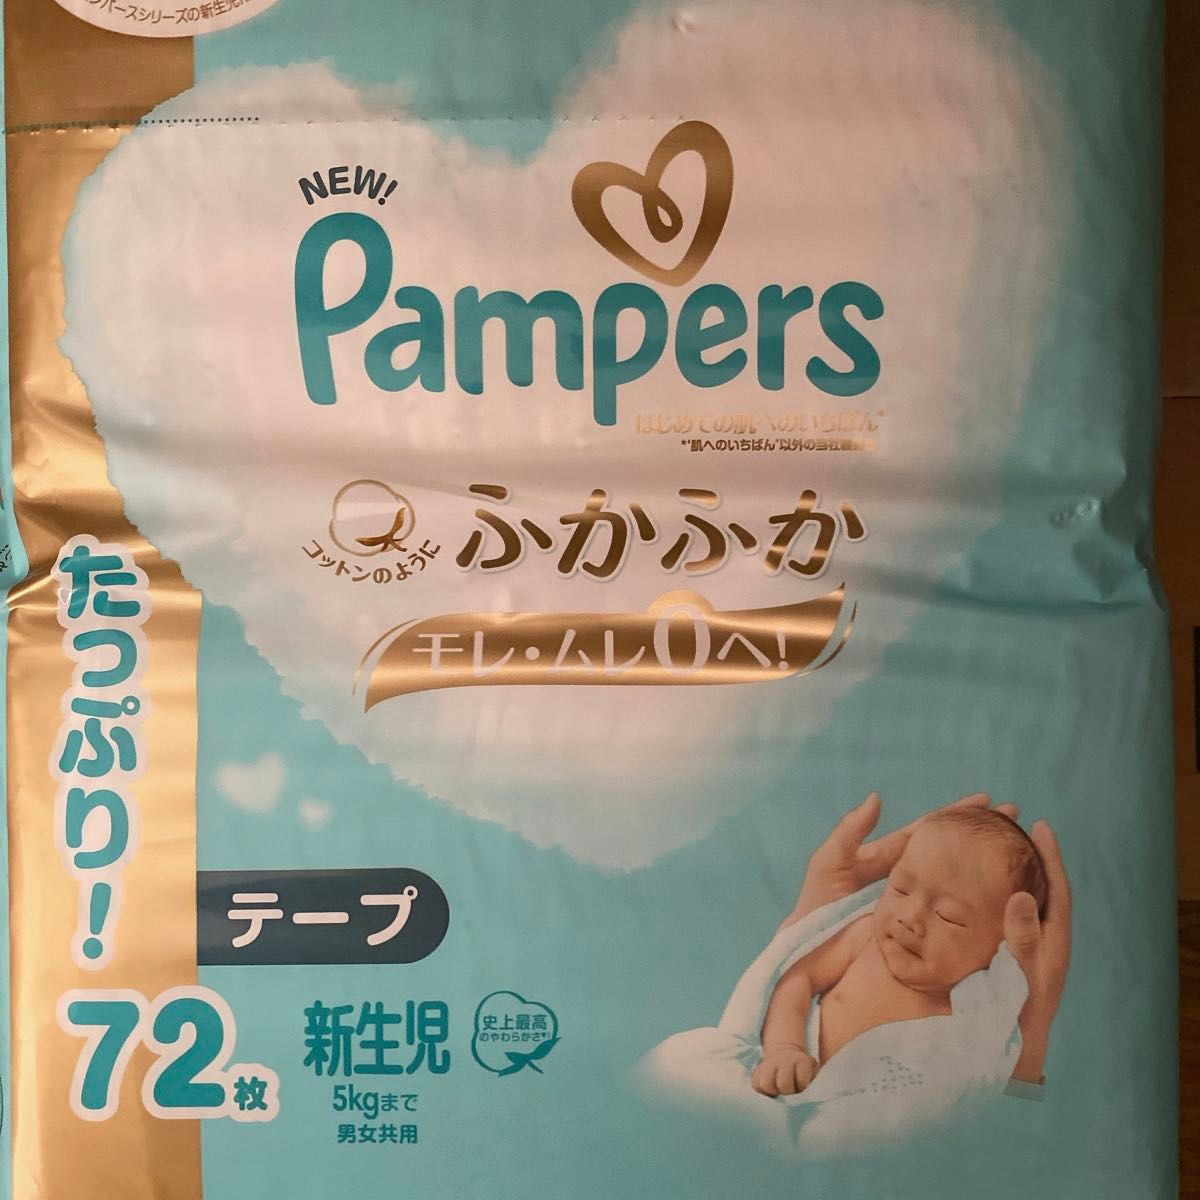 パンパース さらさらケア モレムレ0へ 超吸収ジェル はじめての肌へのいちばん オムツ テープ 新生児 男女共用 3袋